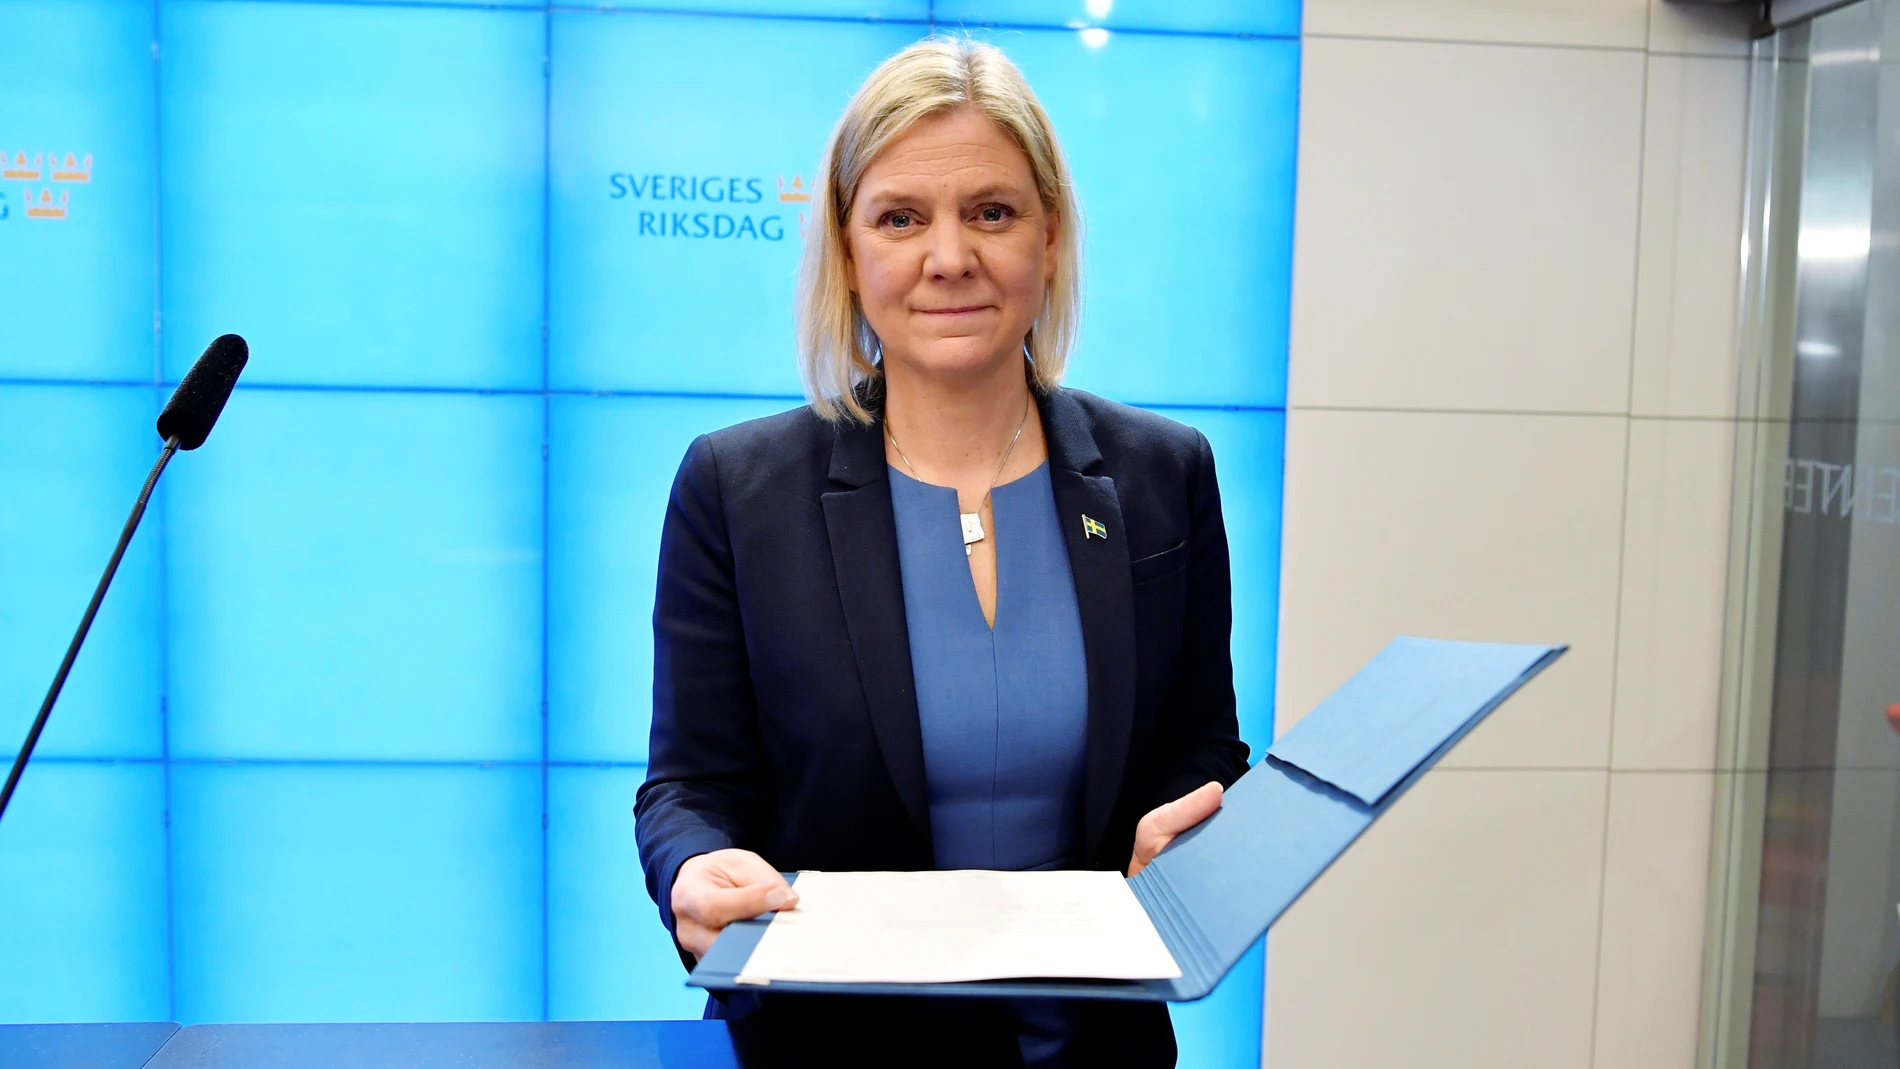 La socialdemócrata Magdalena Andersson se somete este lunes de nuevo a la confianza del Parlamento sueco